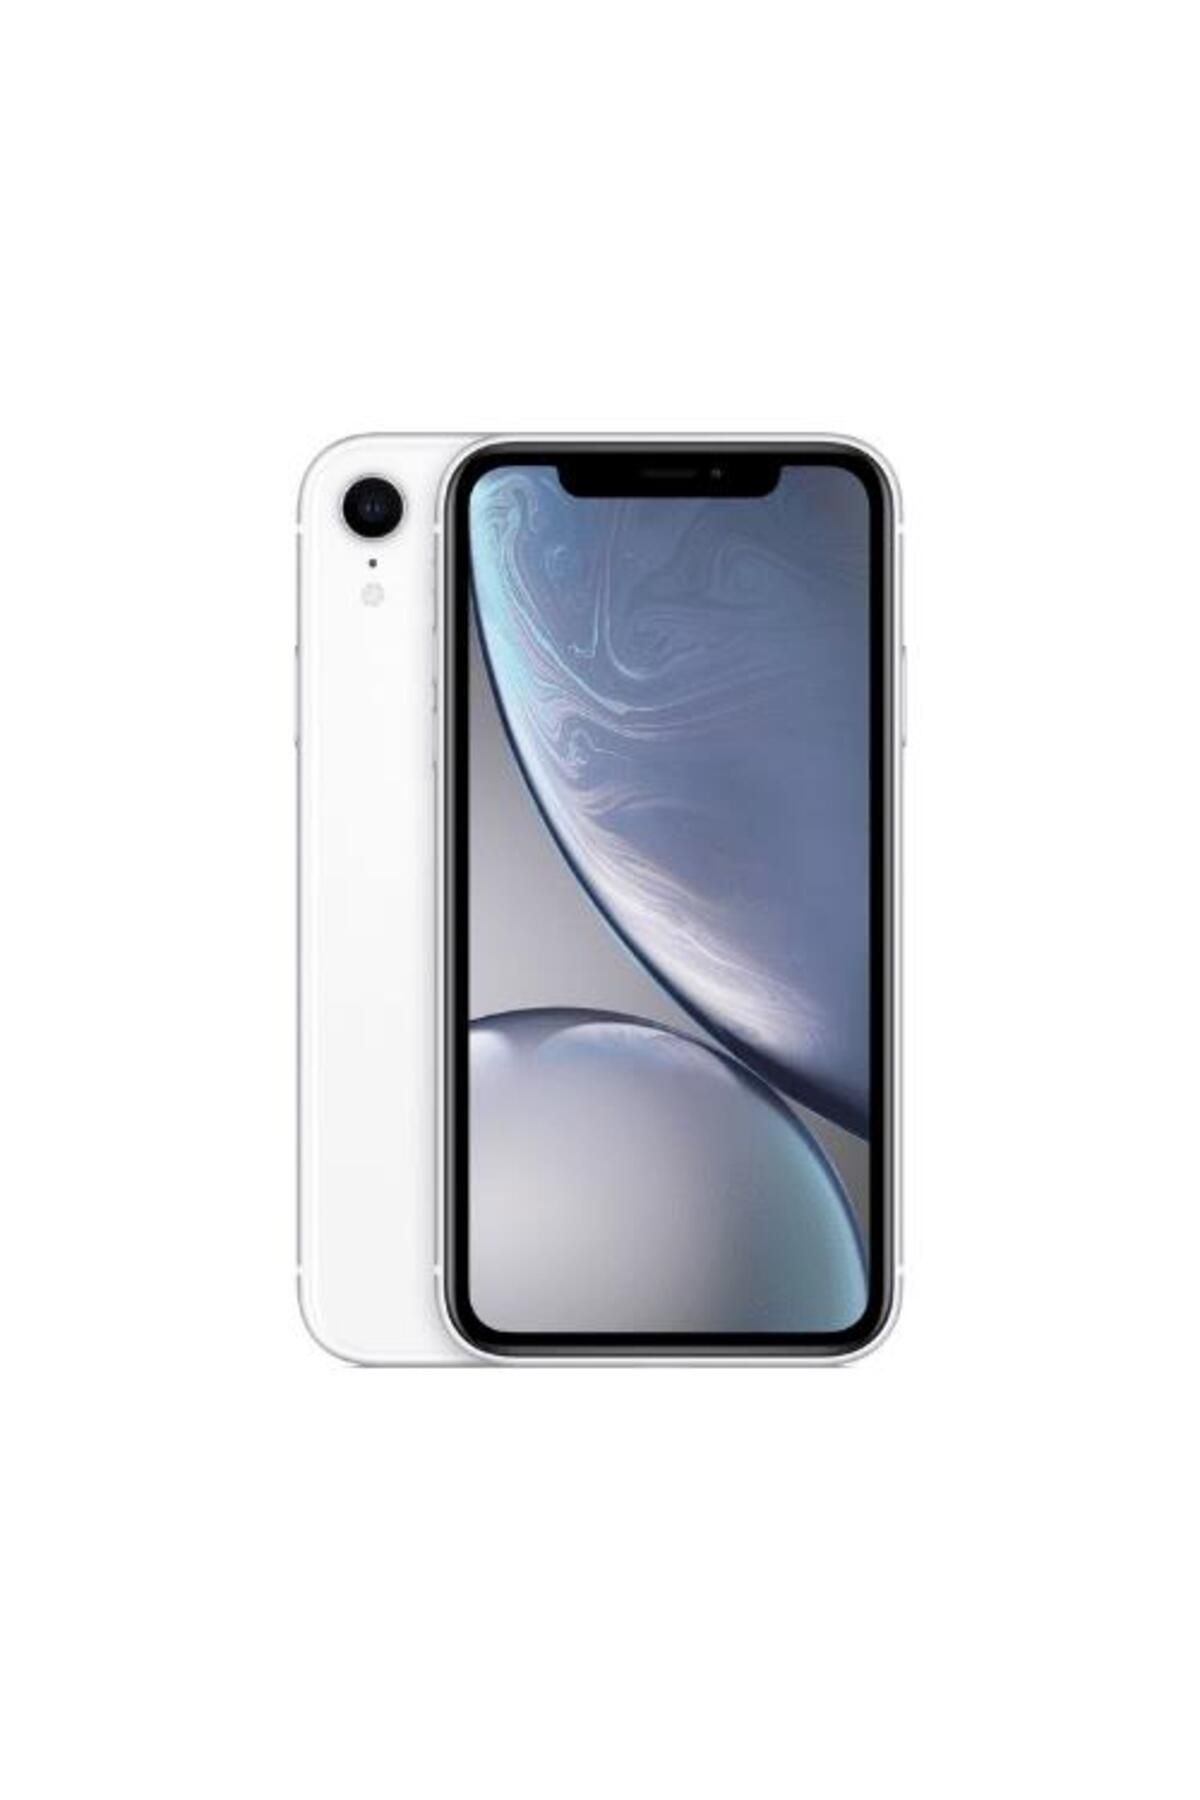 Apple Yenilenmiş Iphone Xr 64gb -b Kalite- Beyaz